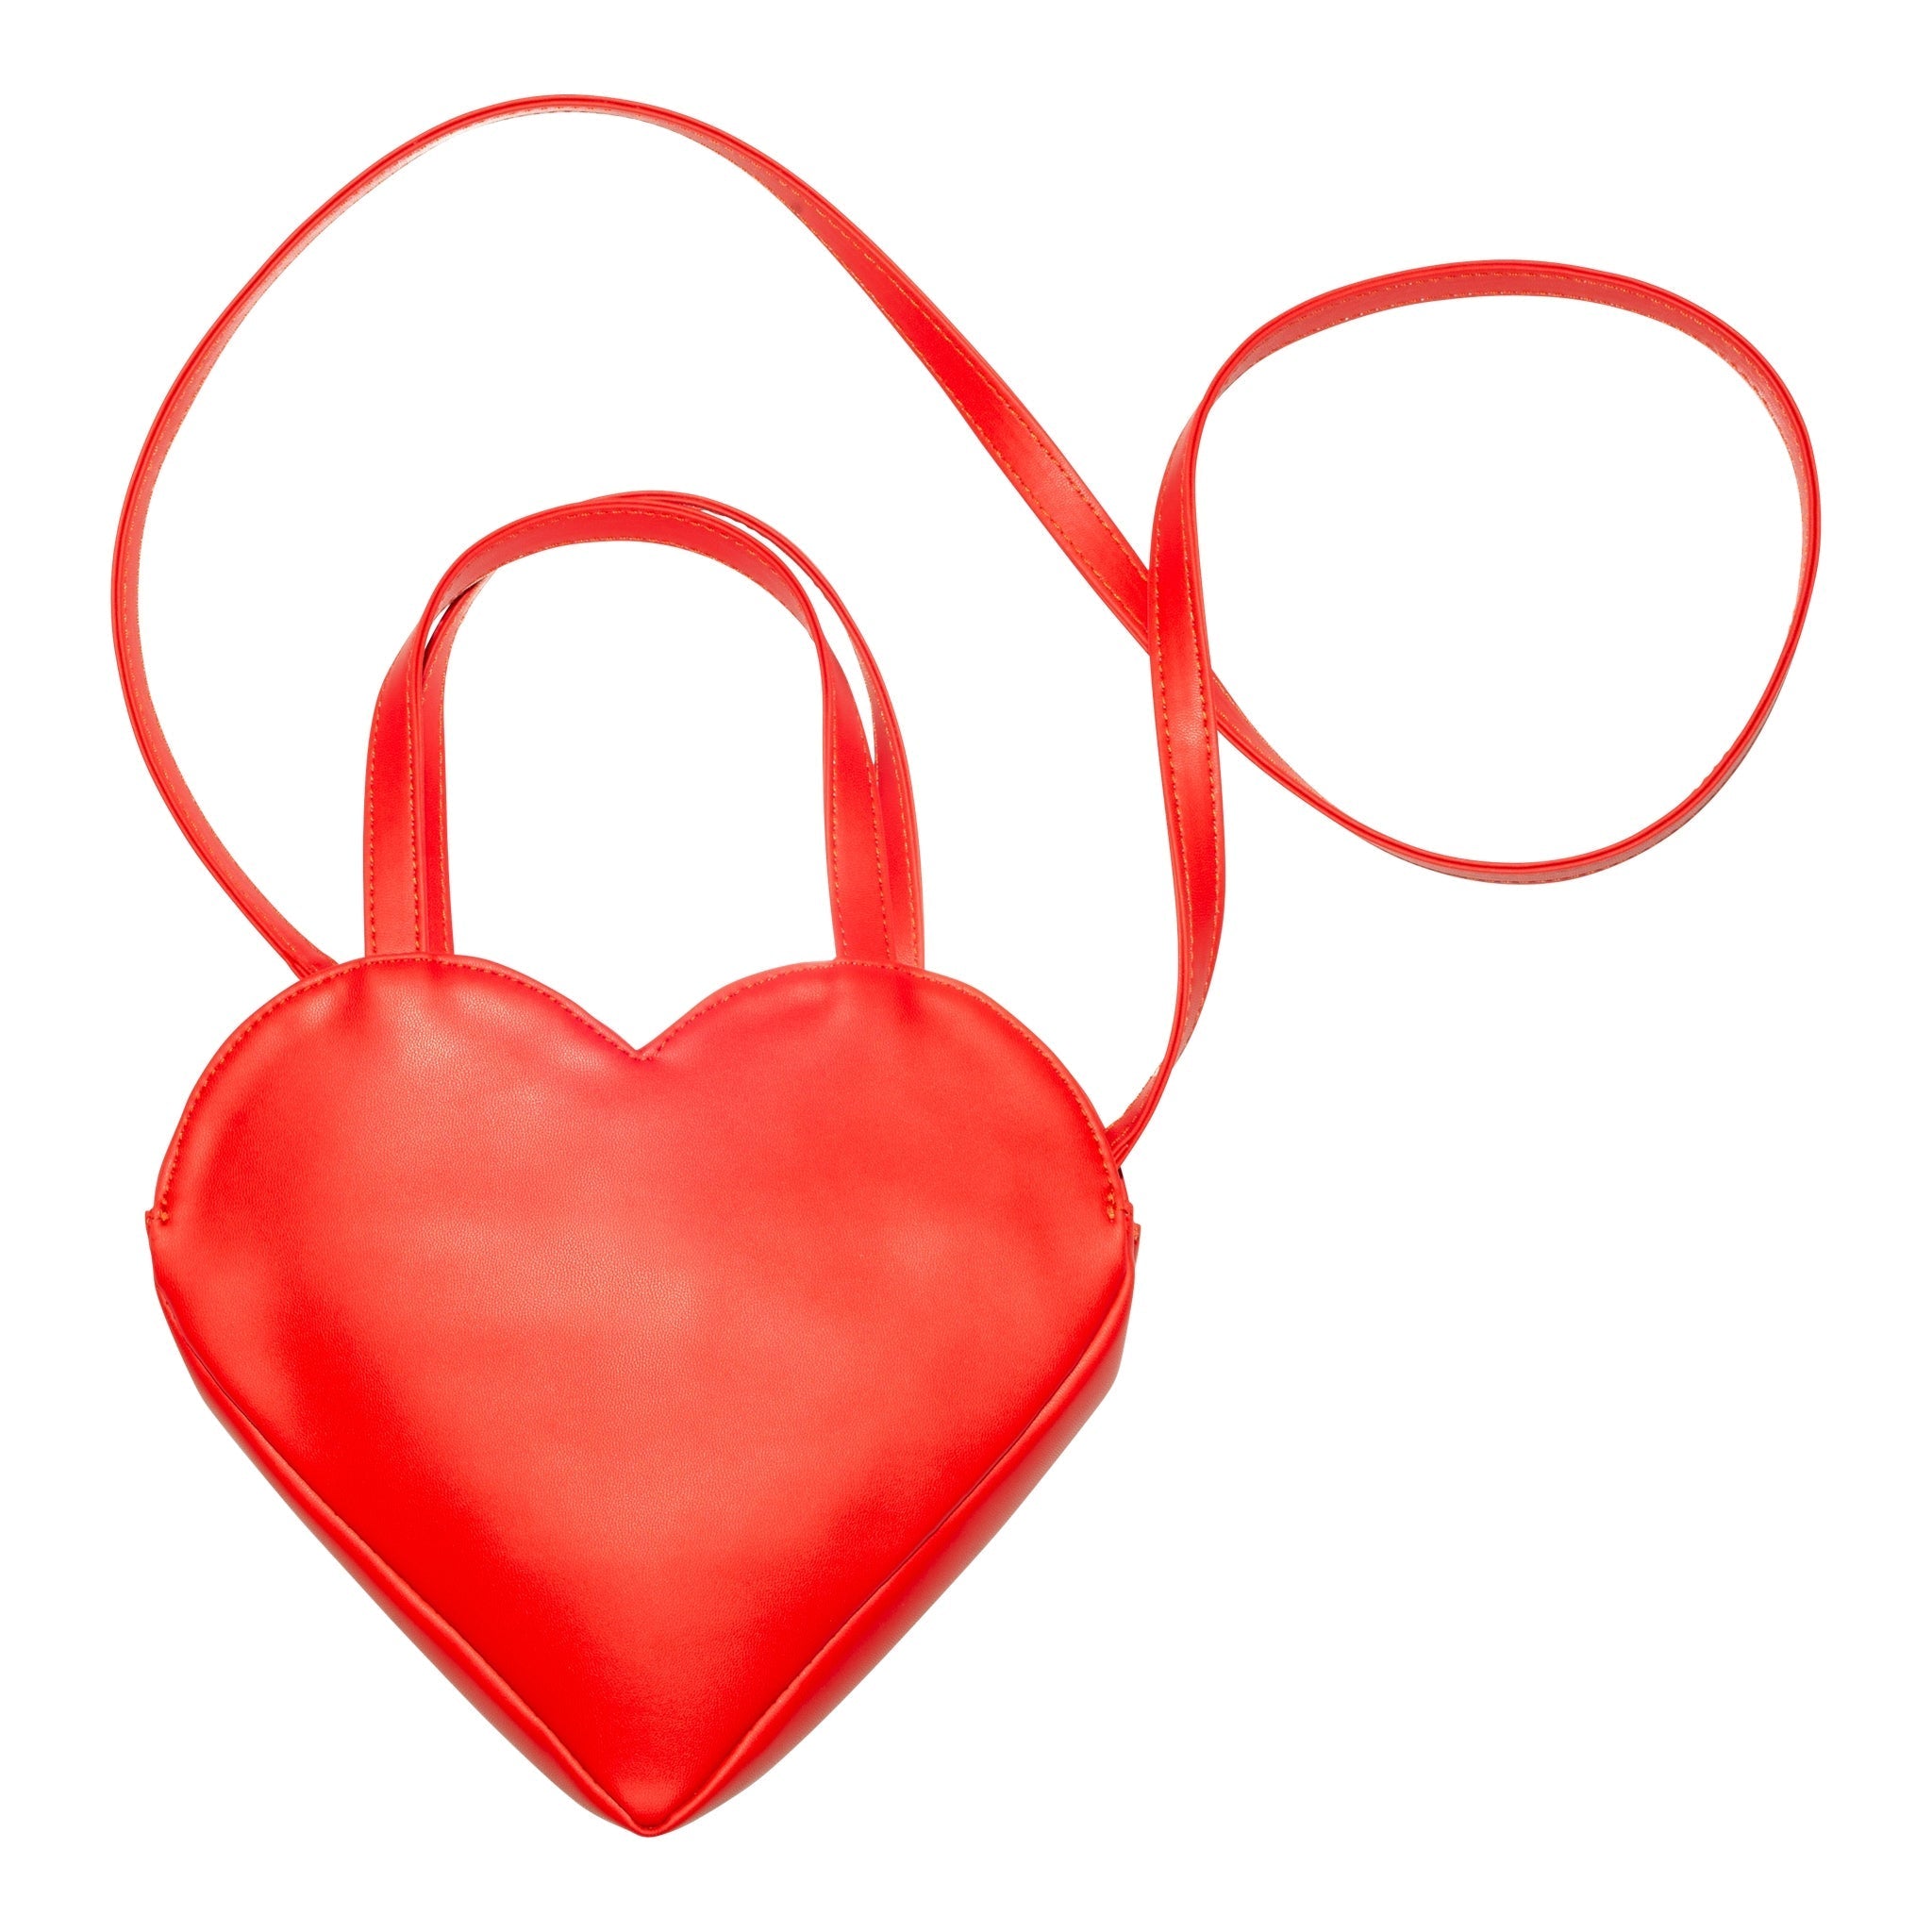 Cork Heart Shape Handbag